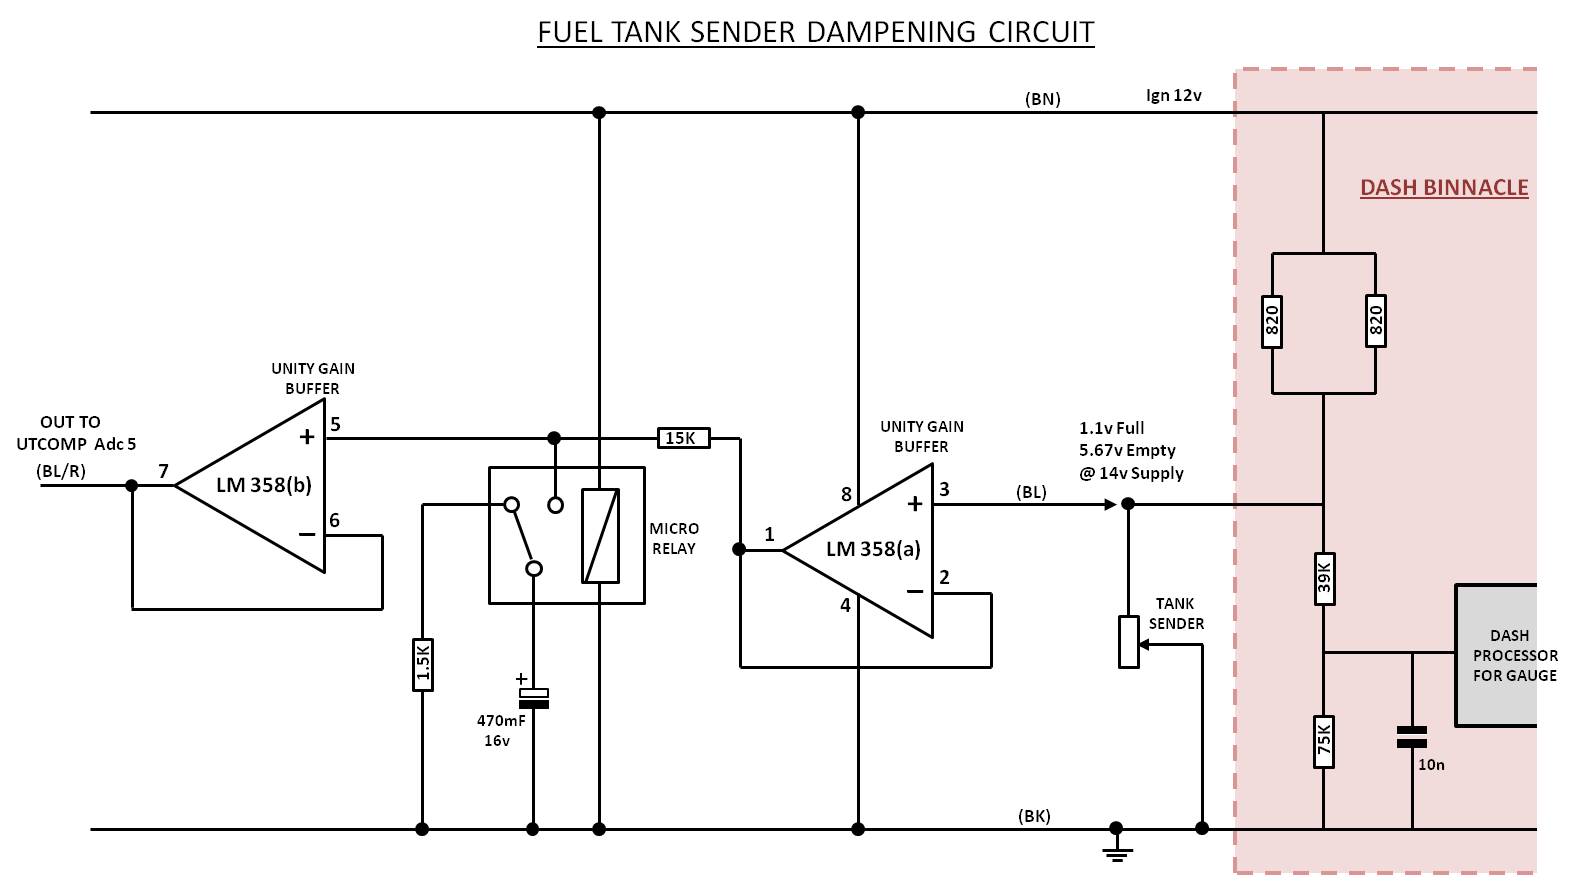 Fuel Tank sender dampening cct mark2.jpg